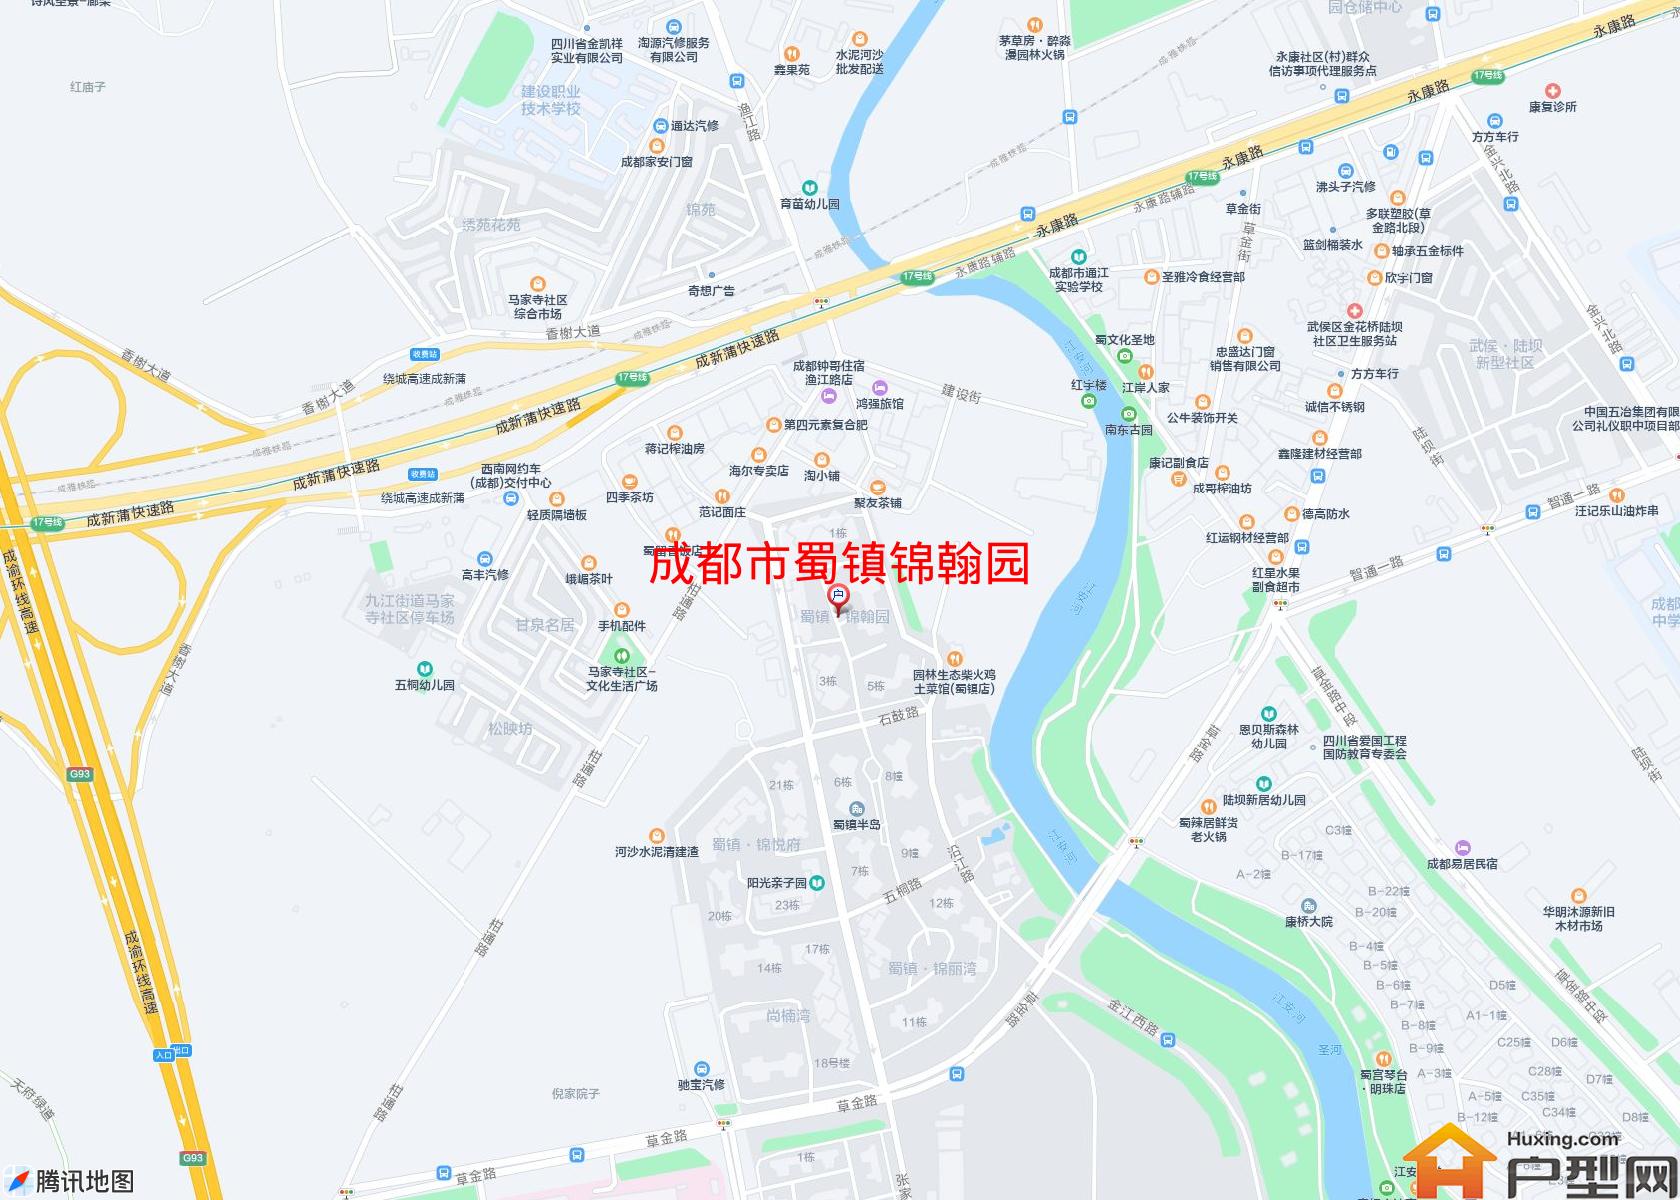 蜀镇锦翰园小区 - 户型网